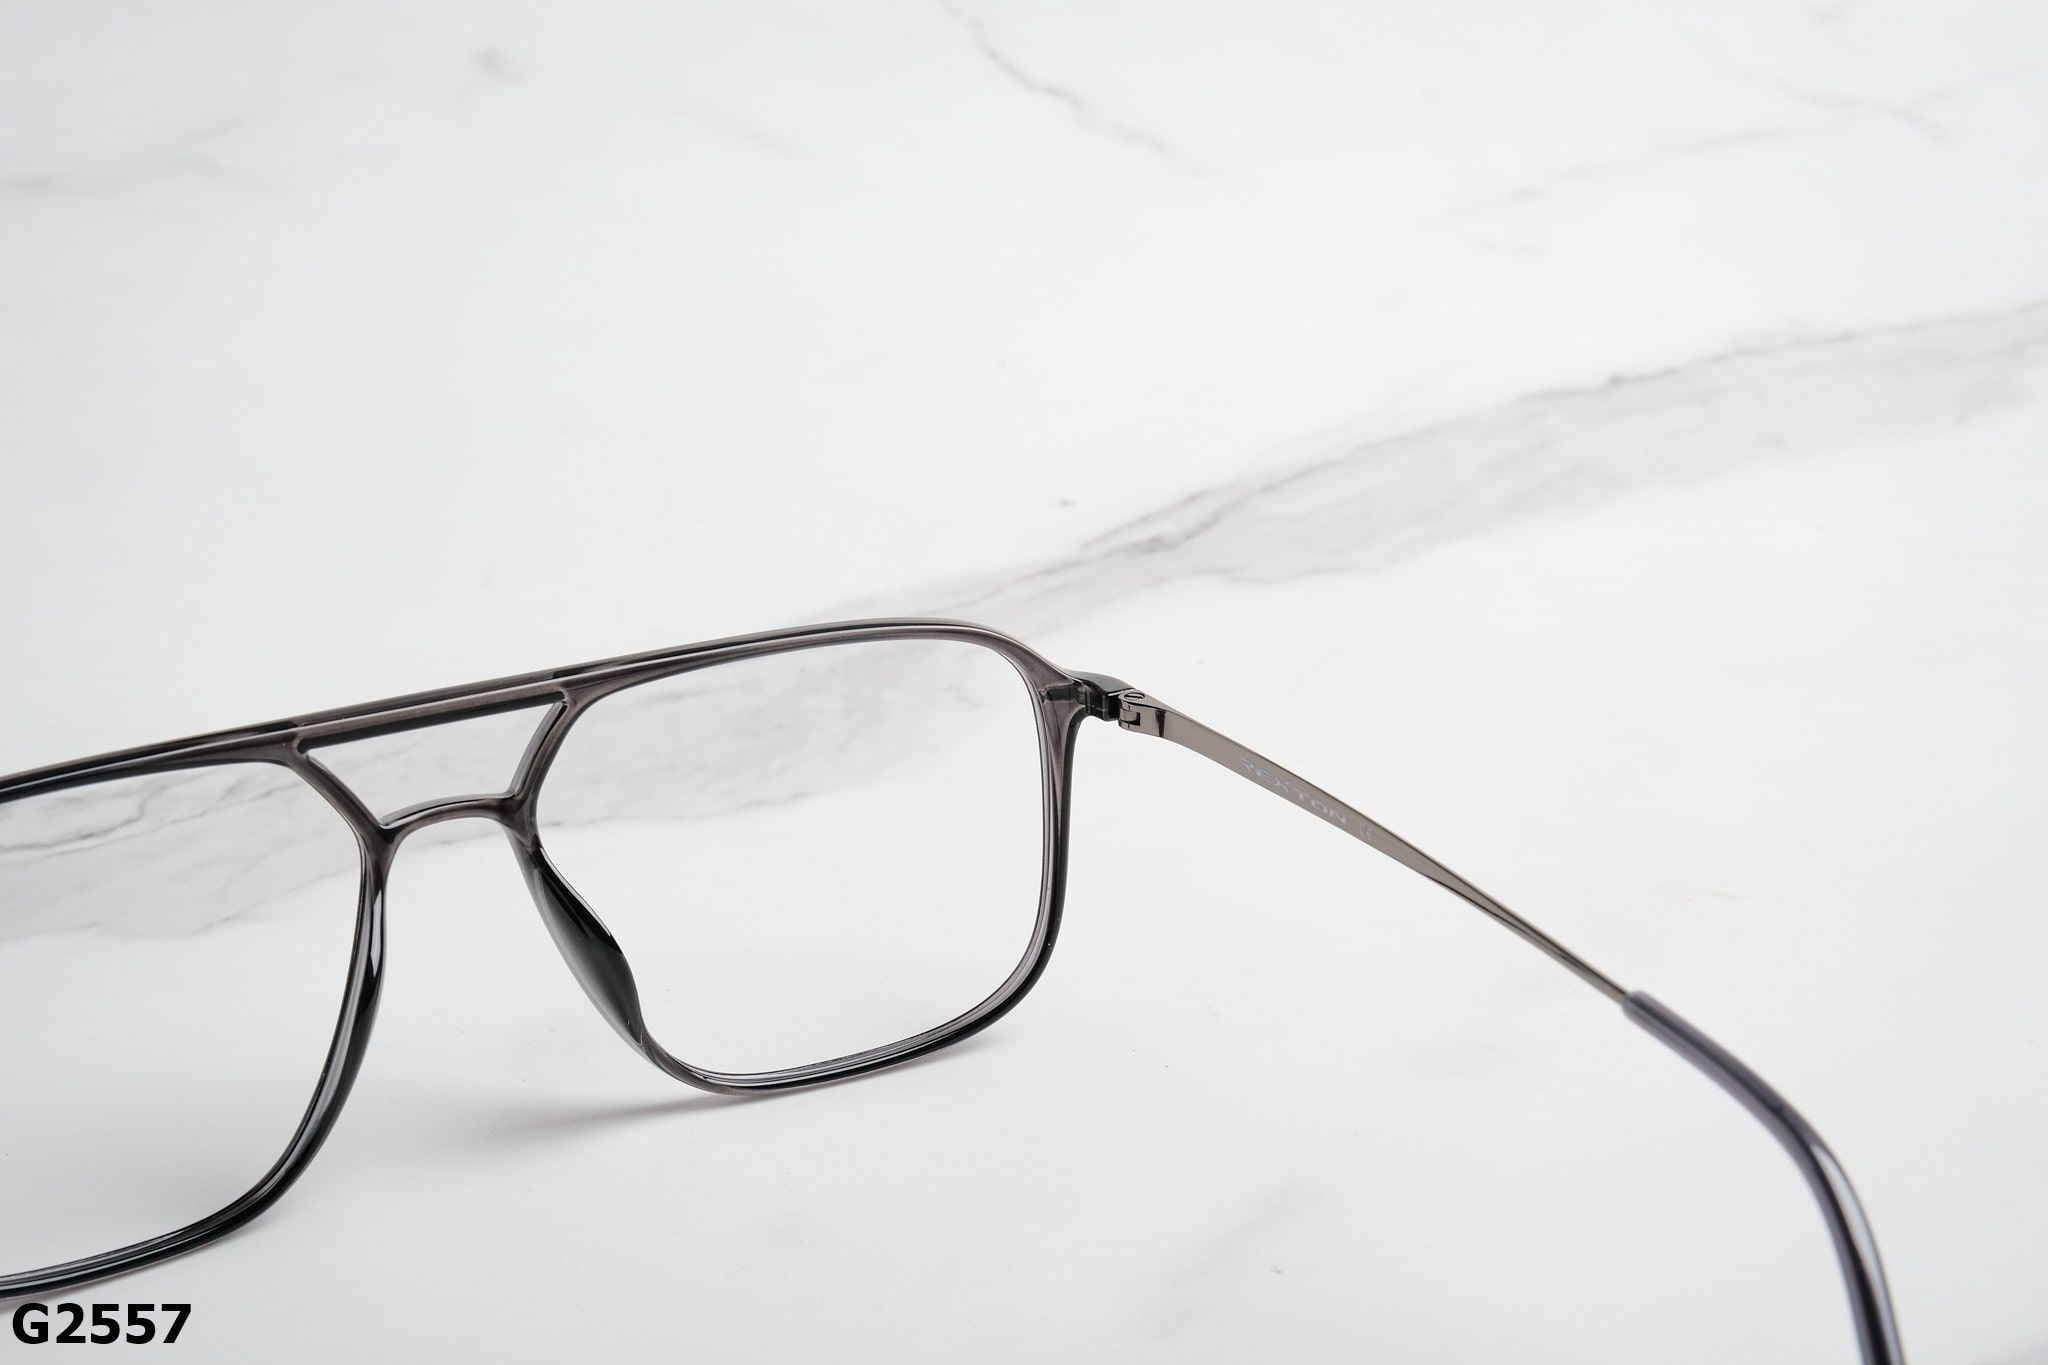  Rex-ton Eyewear - Glasses - G2557 